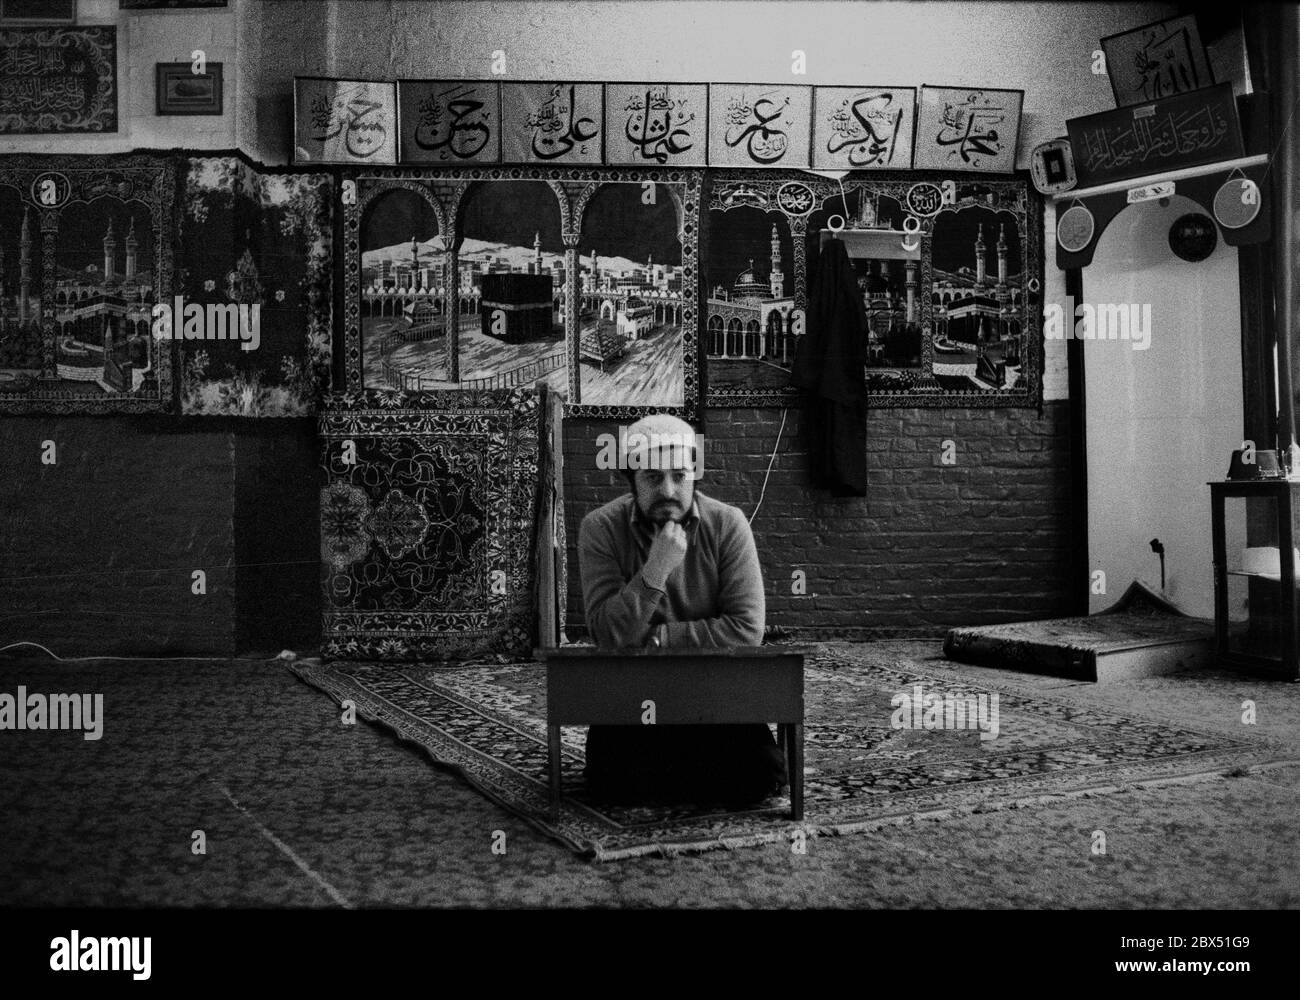 Berlin-Kreuzberg / Ausländer-Türken / 1980 Fatih Moschee. Gottesdienst mit Imam Nail Dural. Die Moschee gehört der Islamischen Föderation an, die nicht auf Regierungsebene ist. Es gibt auch sehr fundamentalistische islamische Richtungen in ihr. Die Fatih Moschee ist moderat. Imam Nail Dural // Islam / [automatisierte Übersetzung] Stockfoto